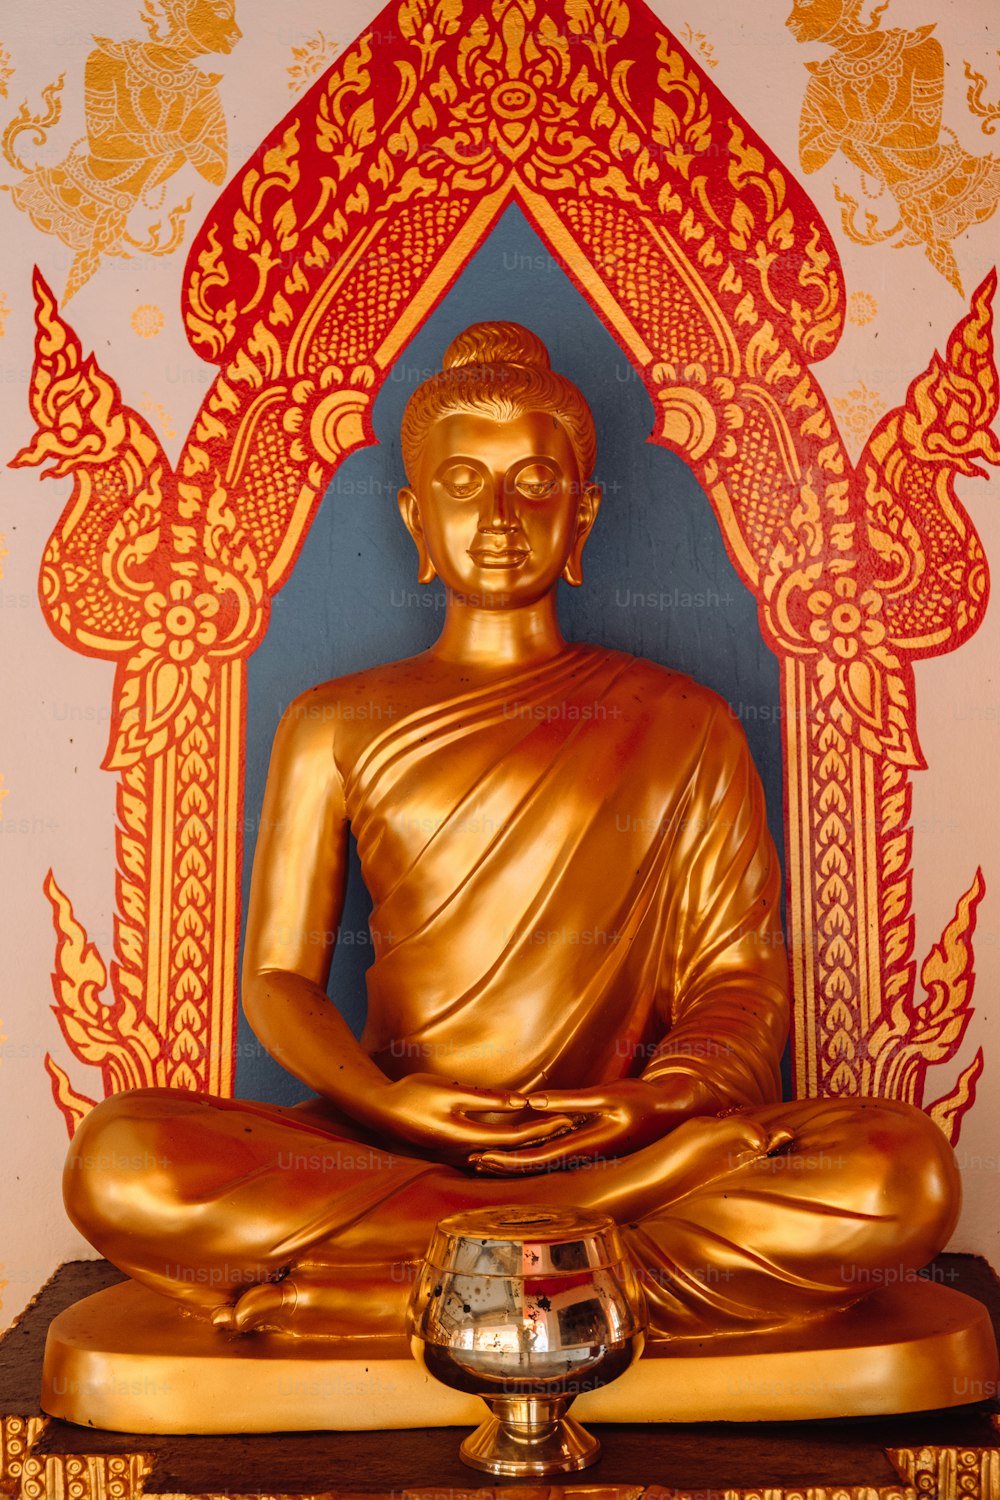 Una estatua de Buda dorado sentada encima de una mesa de madera